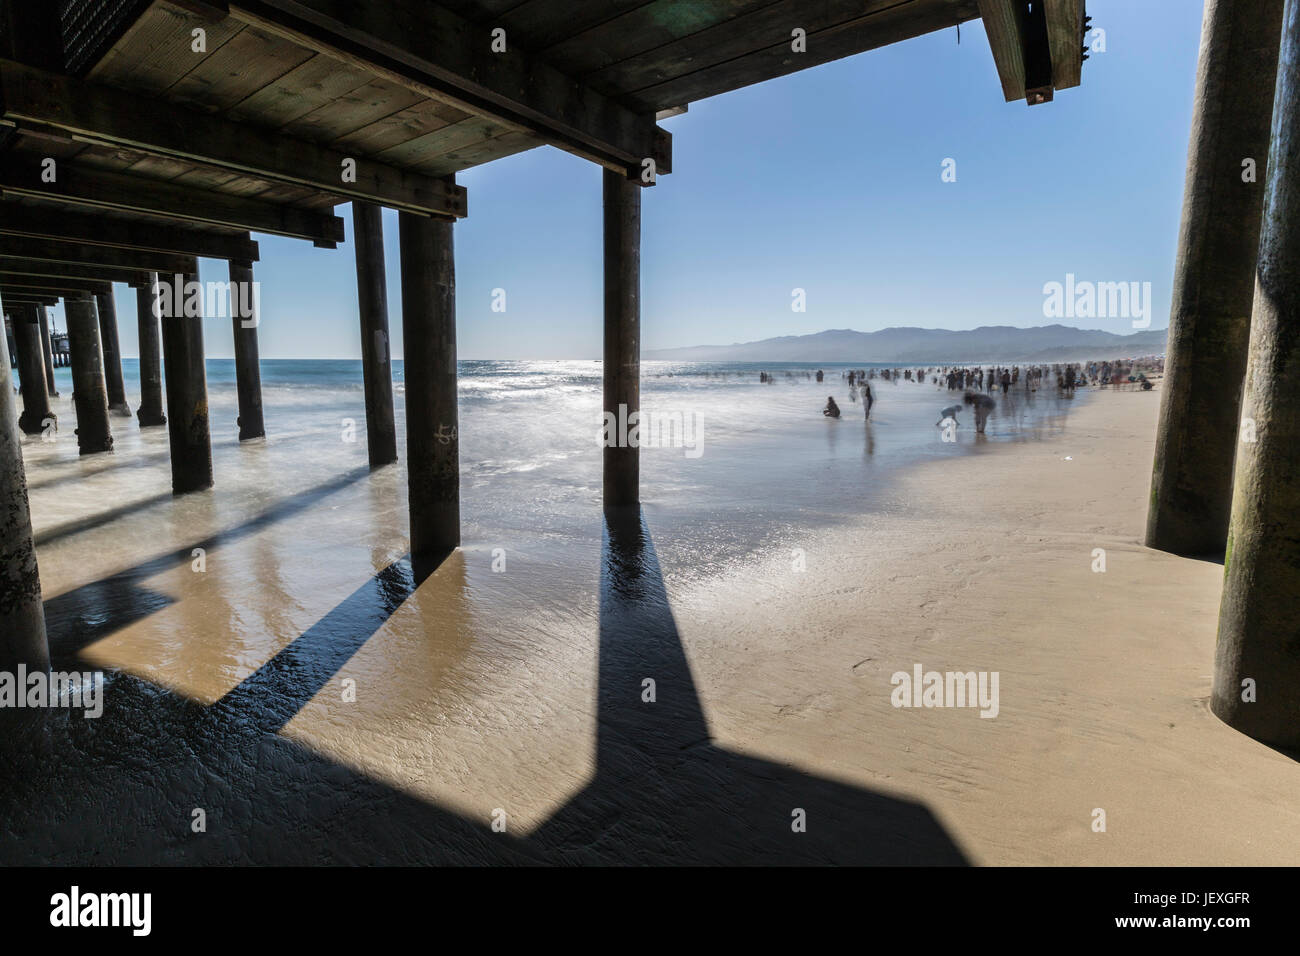 Santa Monica, Californie, USA - 26 juin 2017 : Santa Monica beach with motion blur l'eau et les gens. Banque D'Images